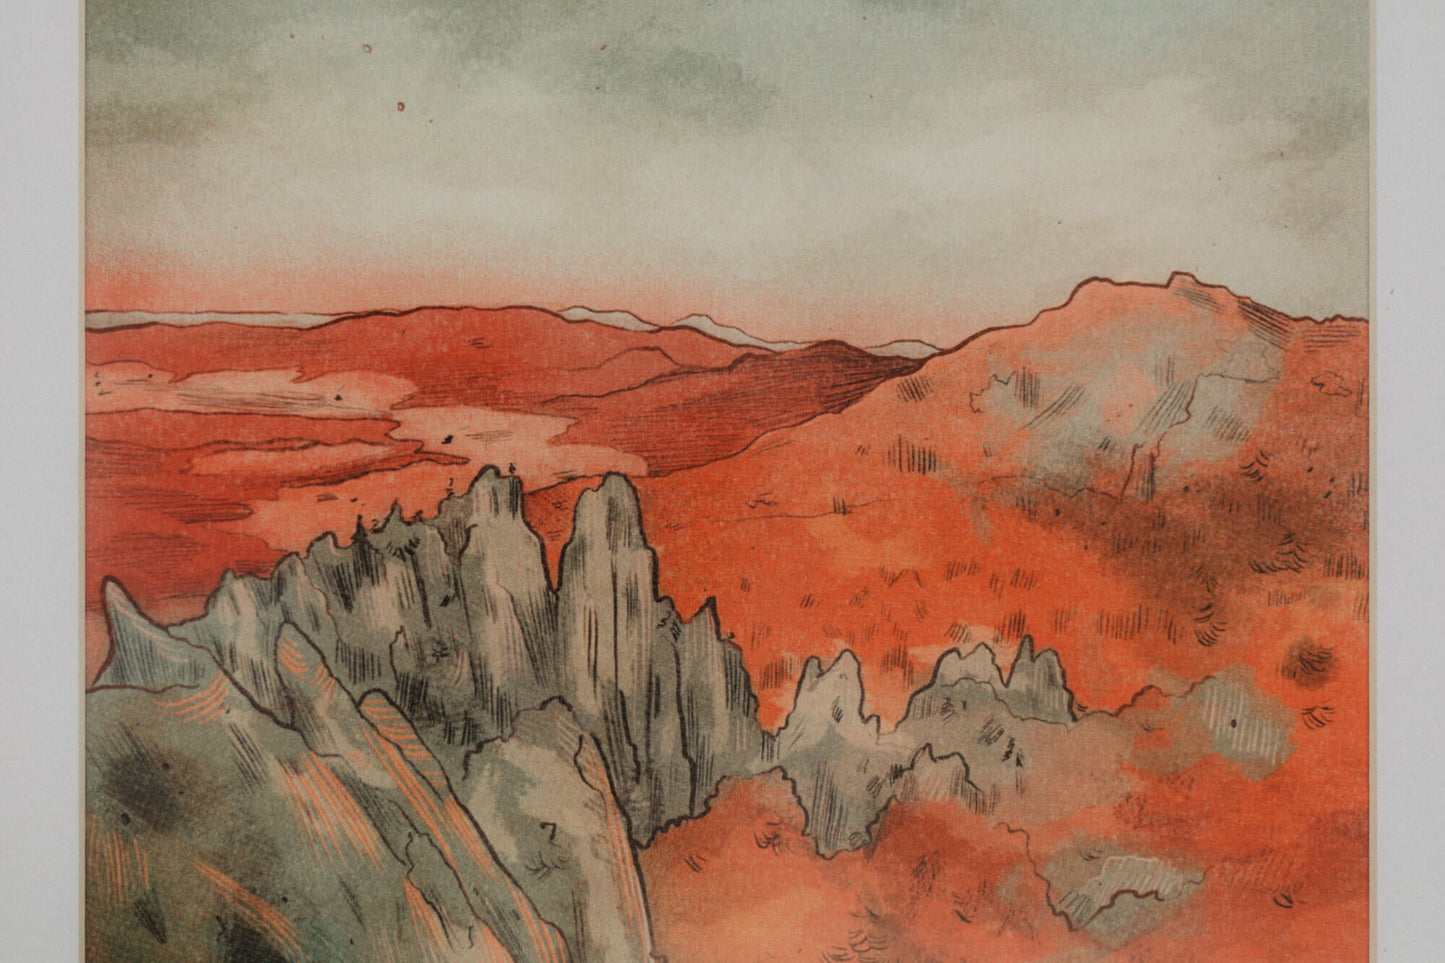 Súľovské skaly – Tina Minor